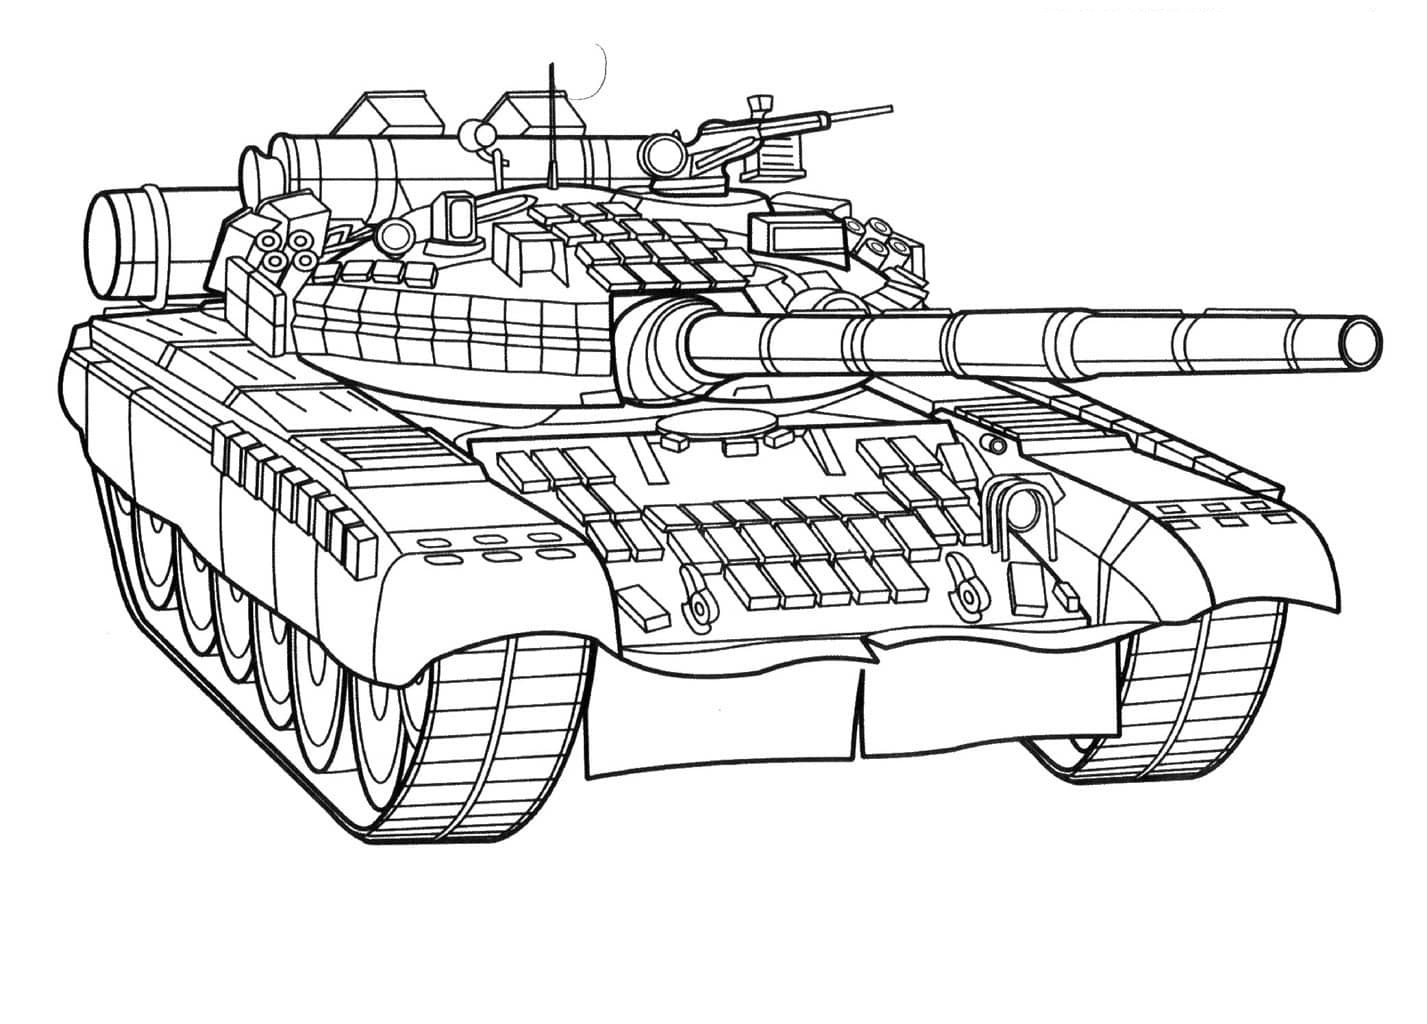 Um verdadeiro tanque de Tank